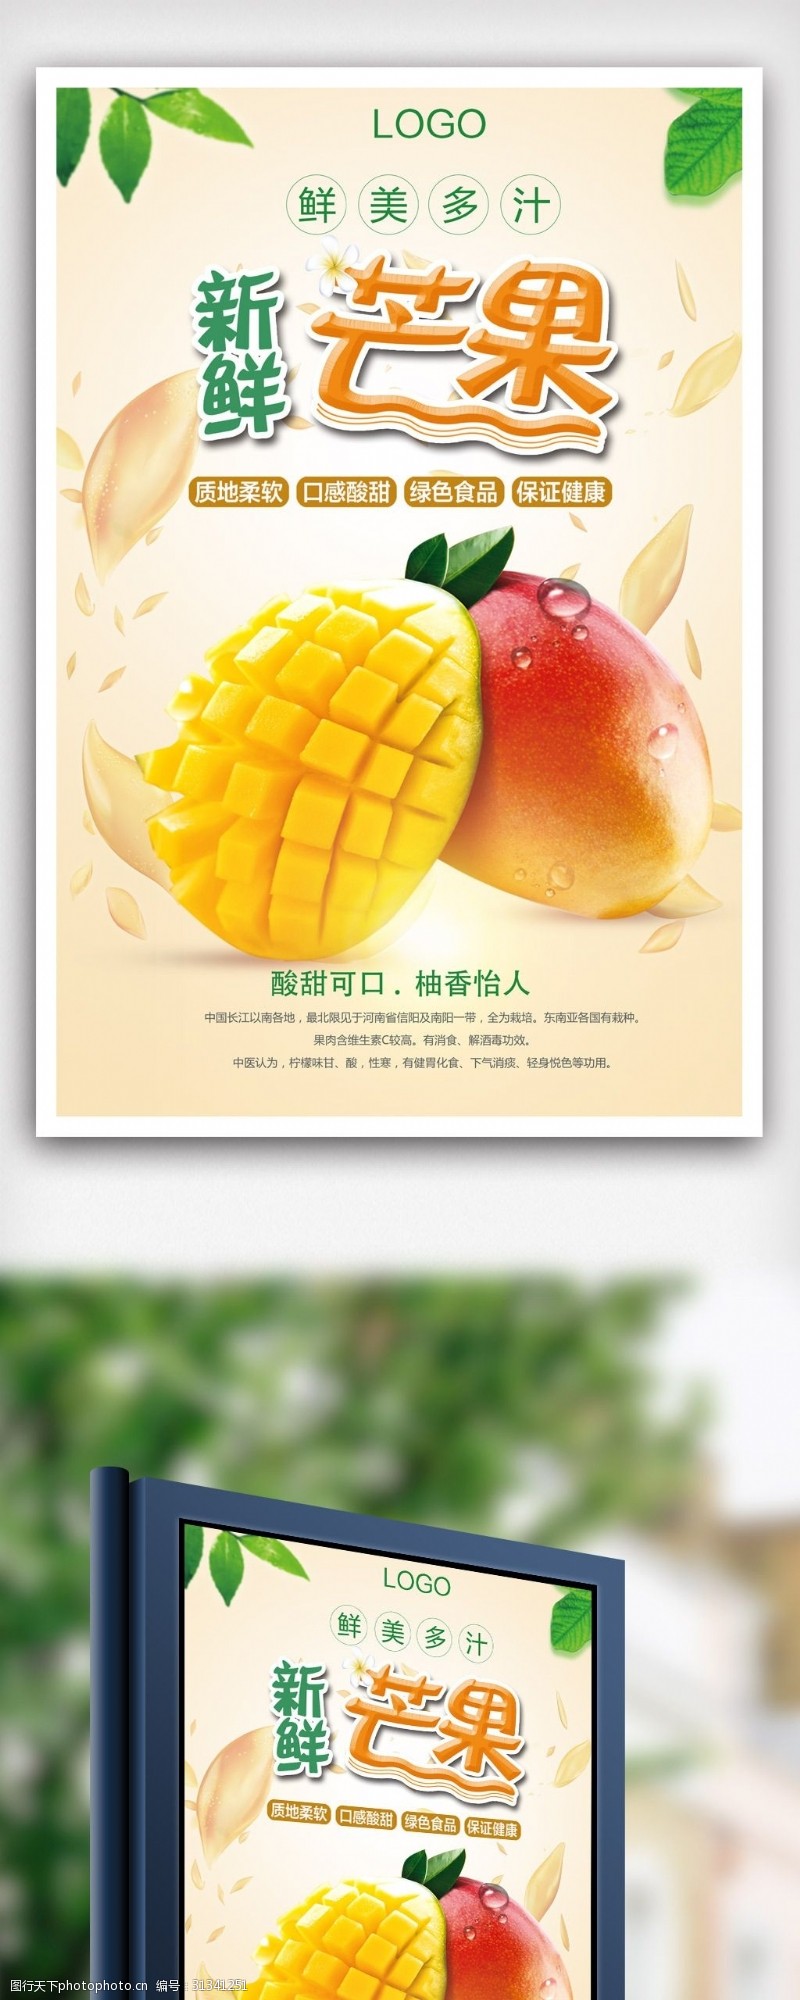 鲜榨果汁免费下载简约新鲜芒果海报设计模版.psd